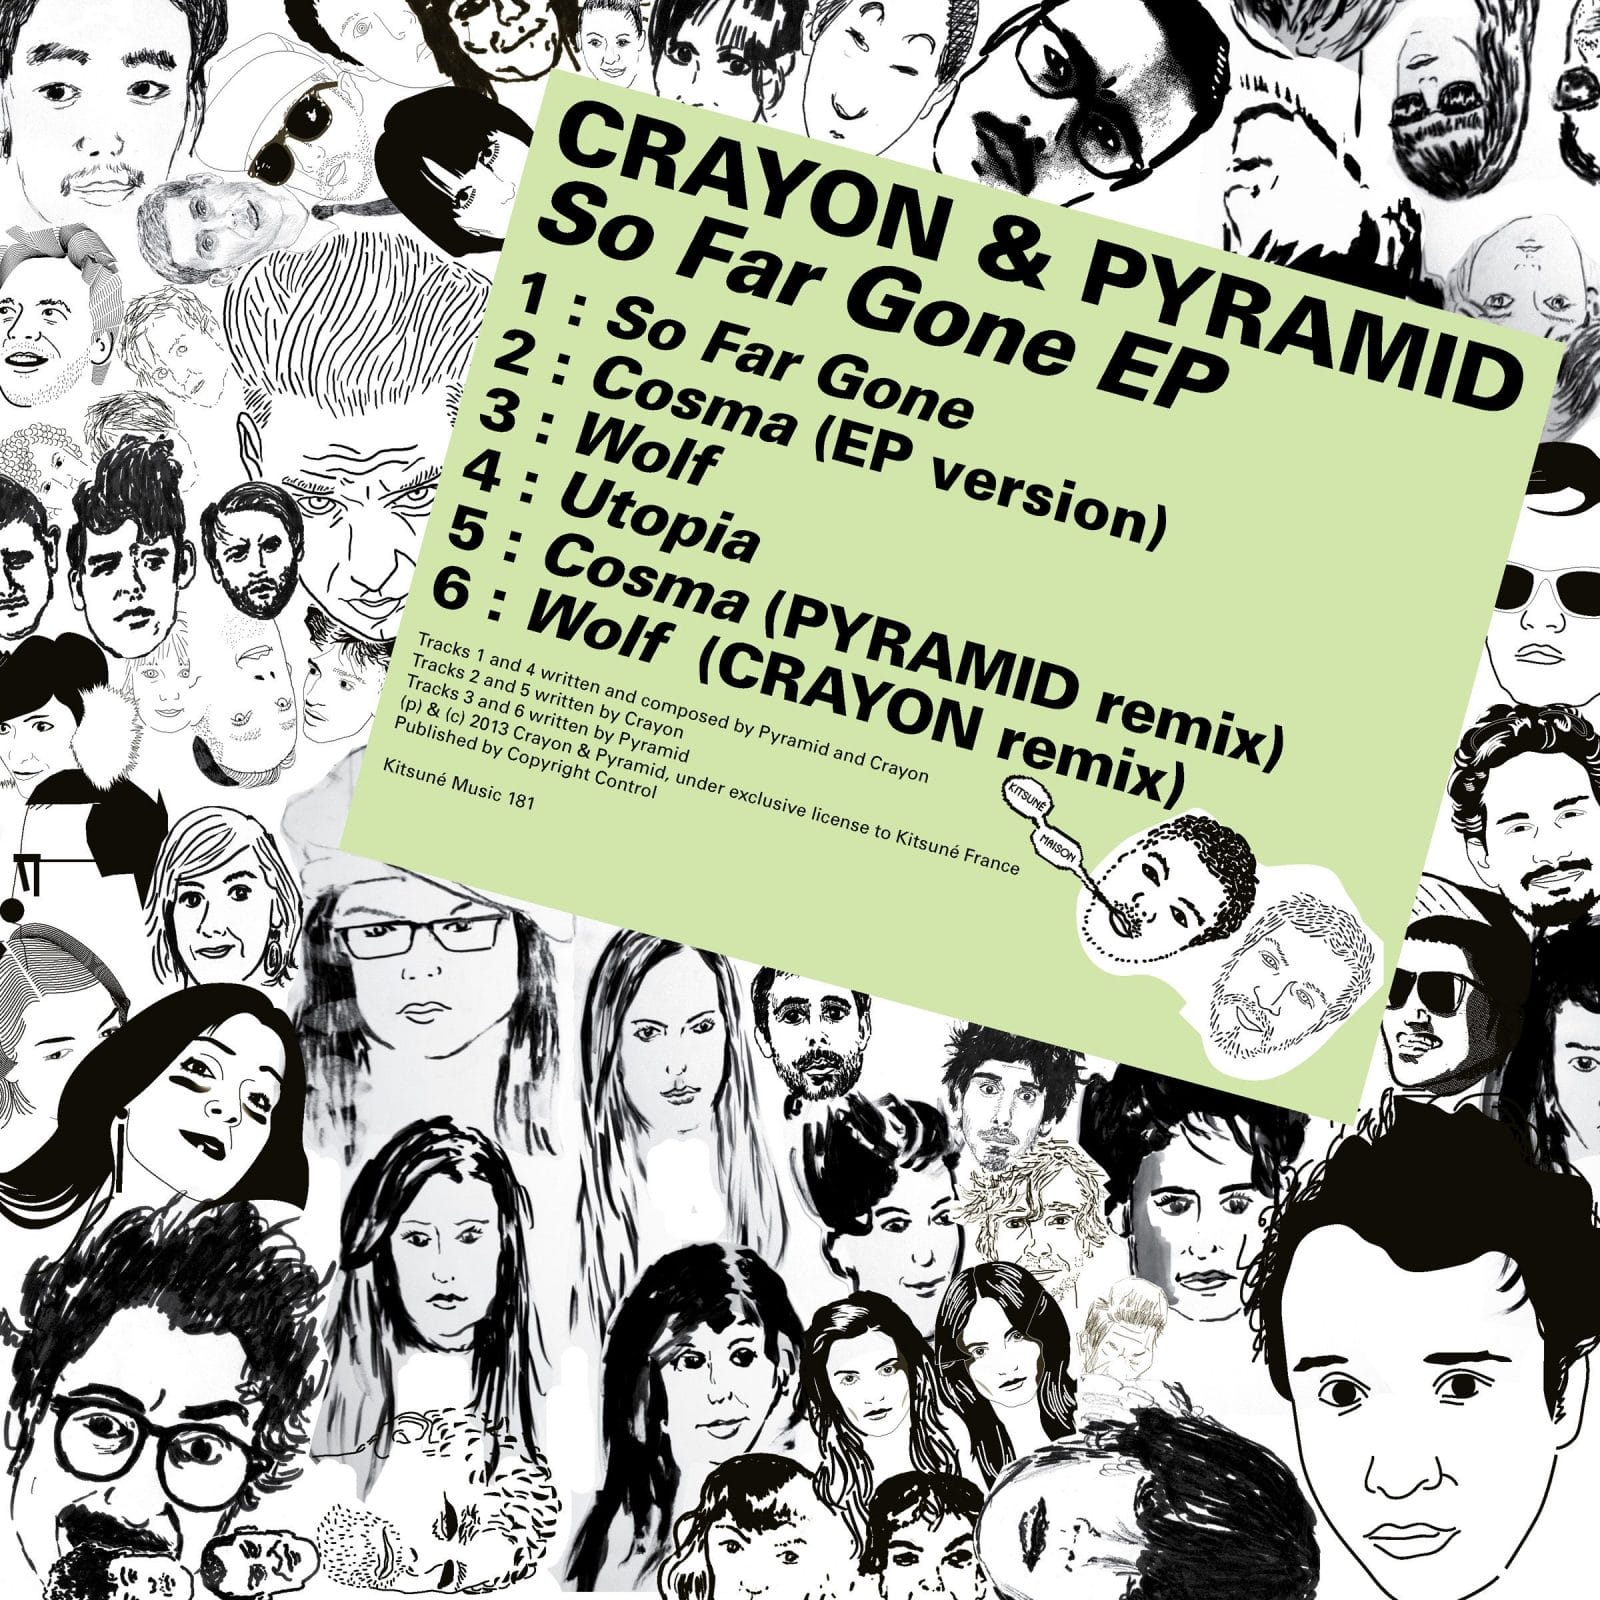 Le Crayon & Pyramid - So Far Gone EP 10